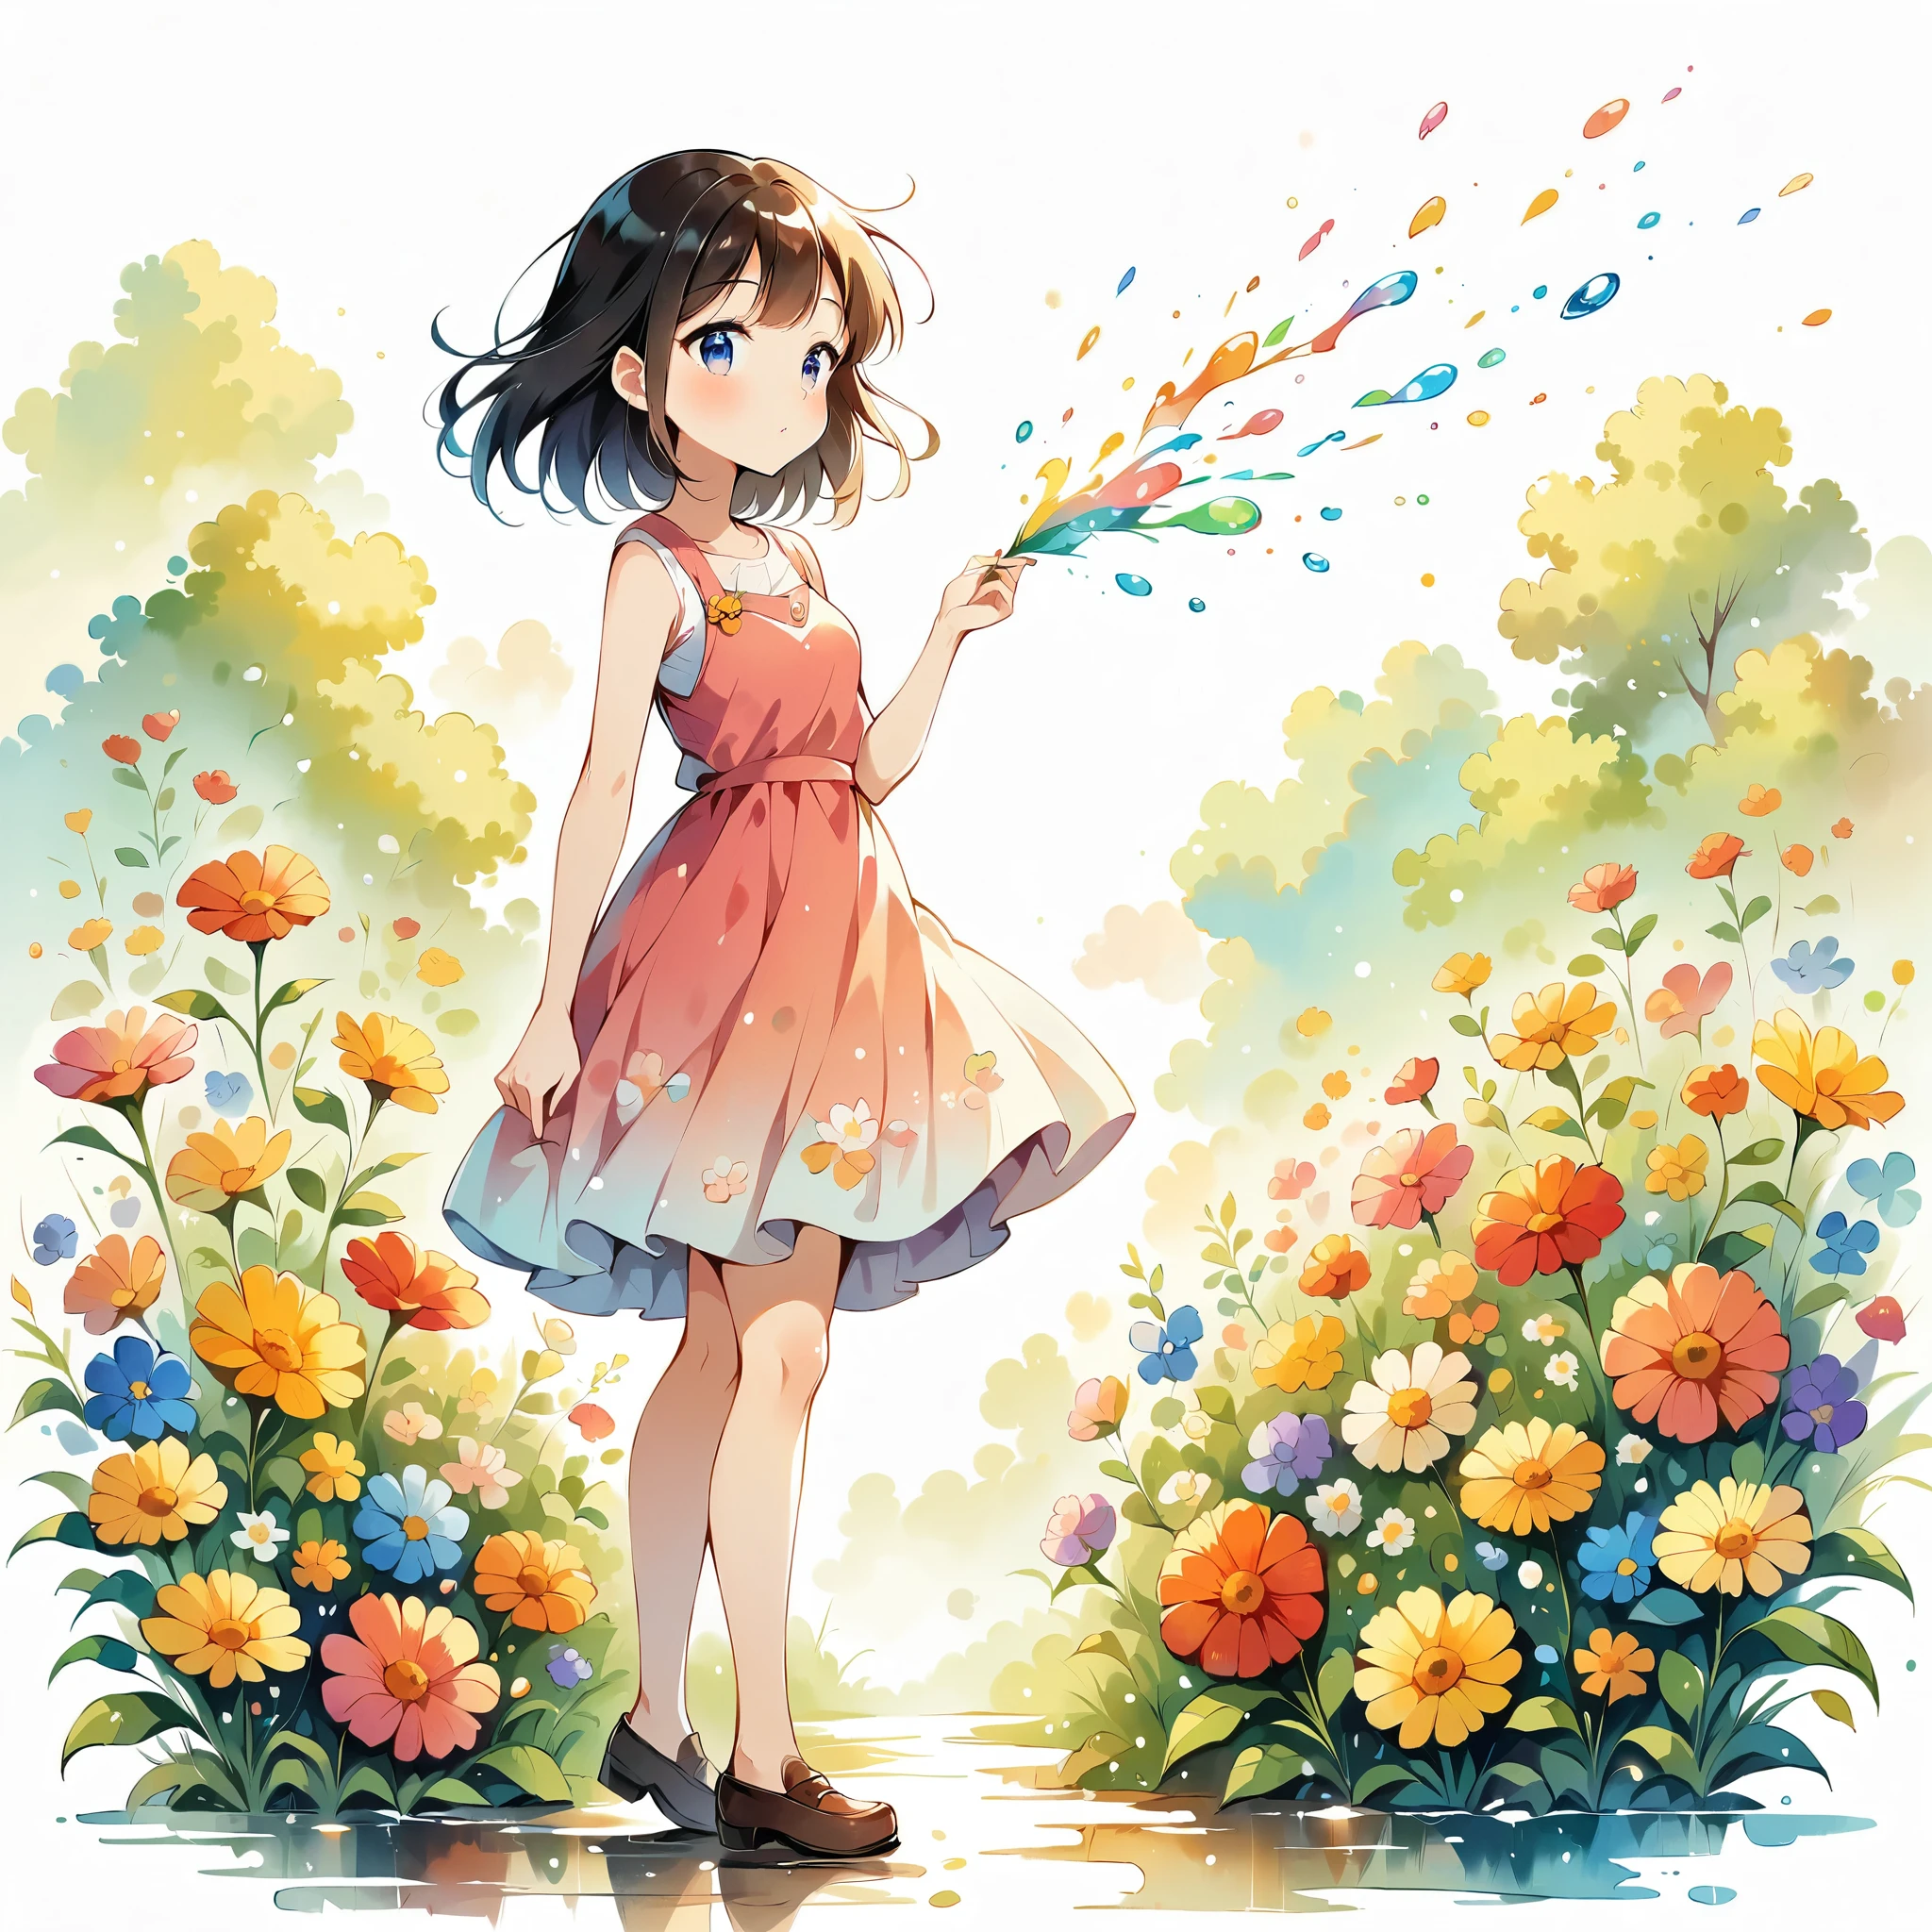 (애니메이션 스타일:1.2, 걸작:1.2),(((소녀 1명))),((작은, 전신보기))), 소녀는 꽃을 입고, 수채화, 간단한 일러스트레이션, 꽃폭풍, 다채로운 물 거품, 